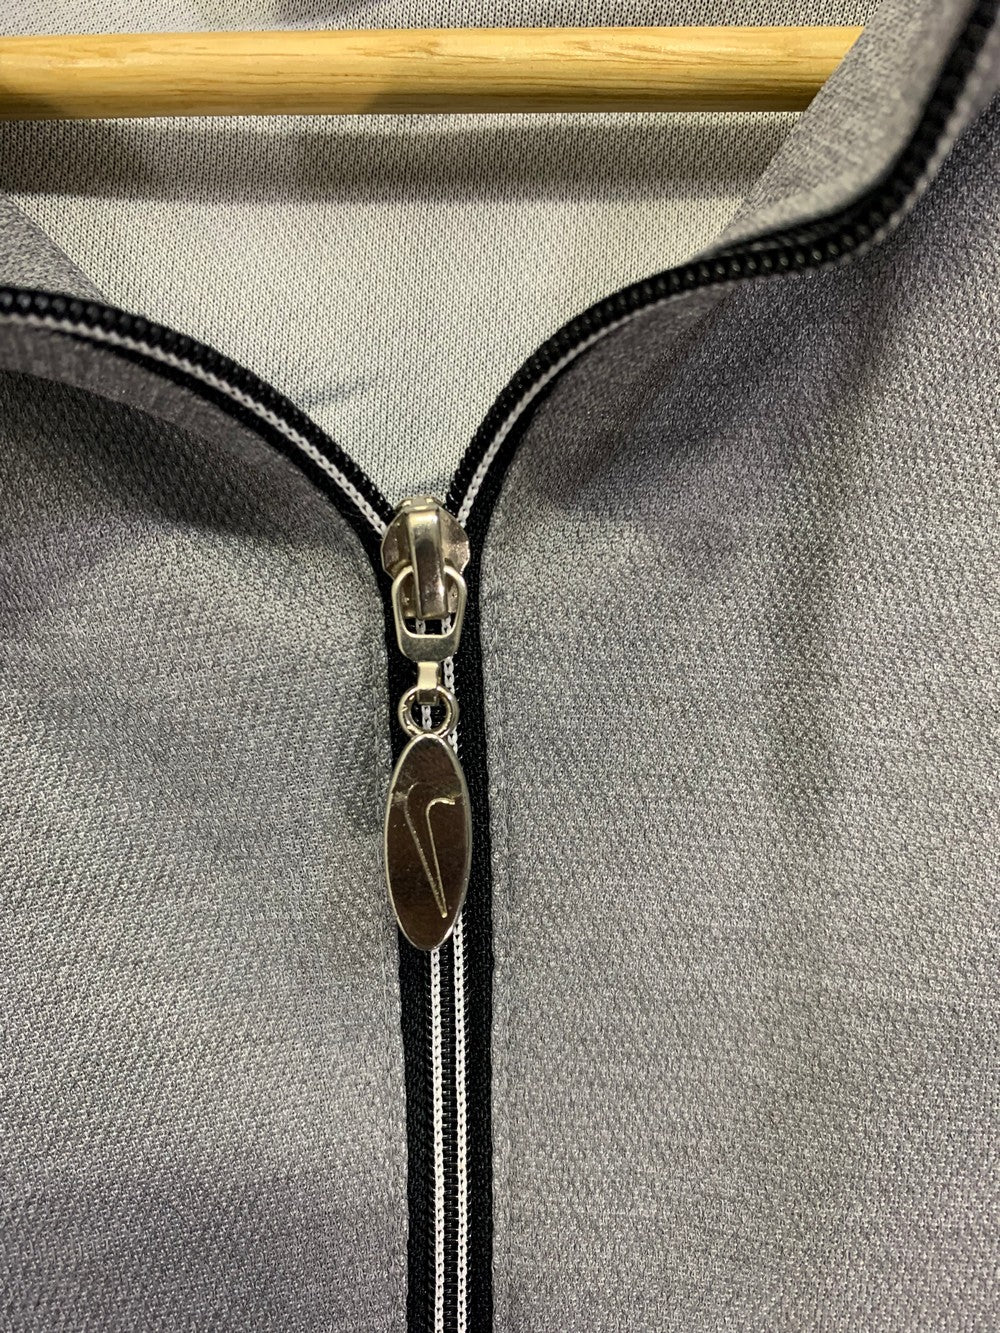 Nike Branded Original Hood Vest Zipper For Women